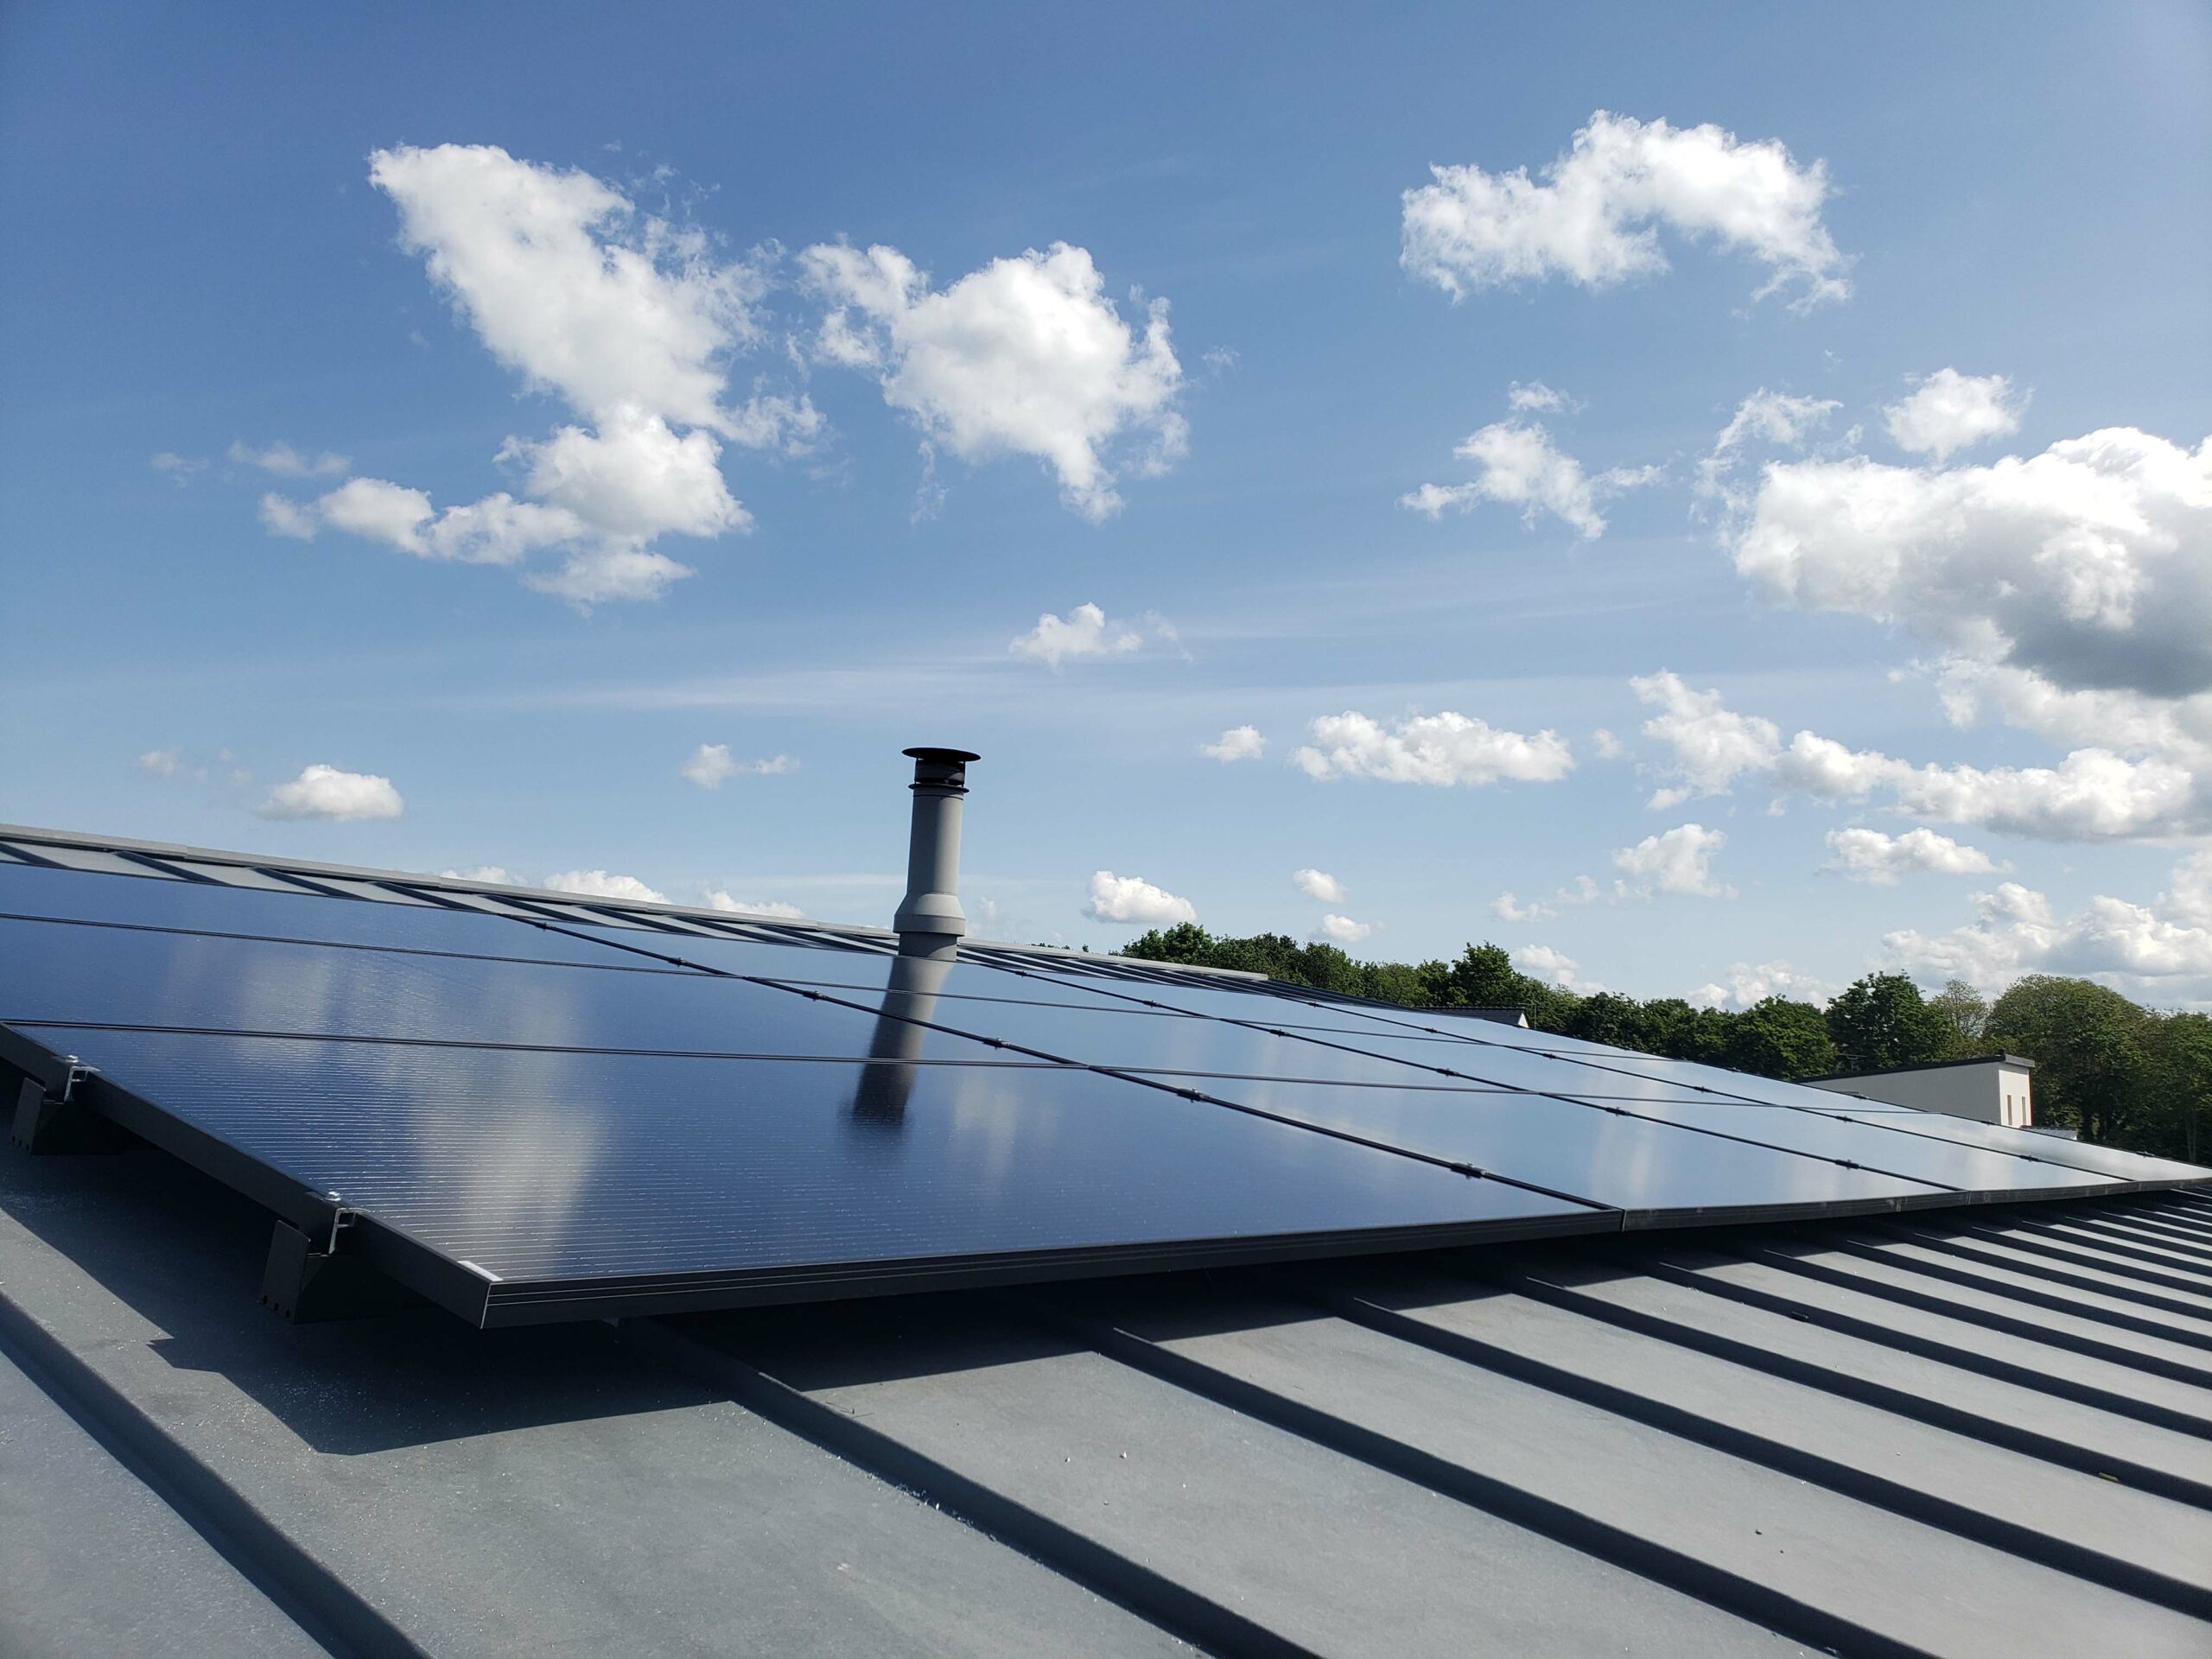 BBS installateur solaire a réalisé ce chantier d'une puissance de 4.5KW en autoconsommation à Rédéné.